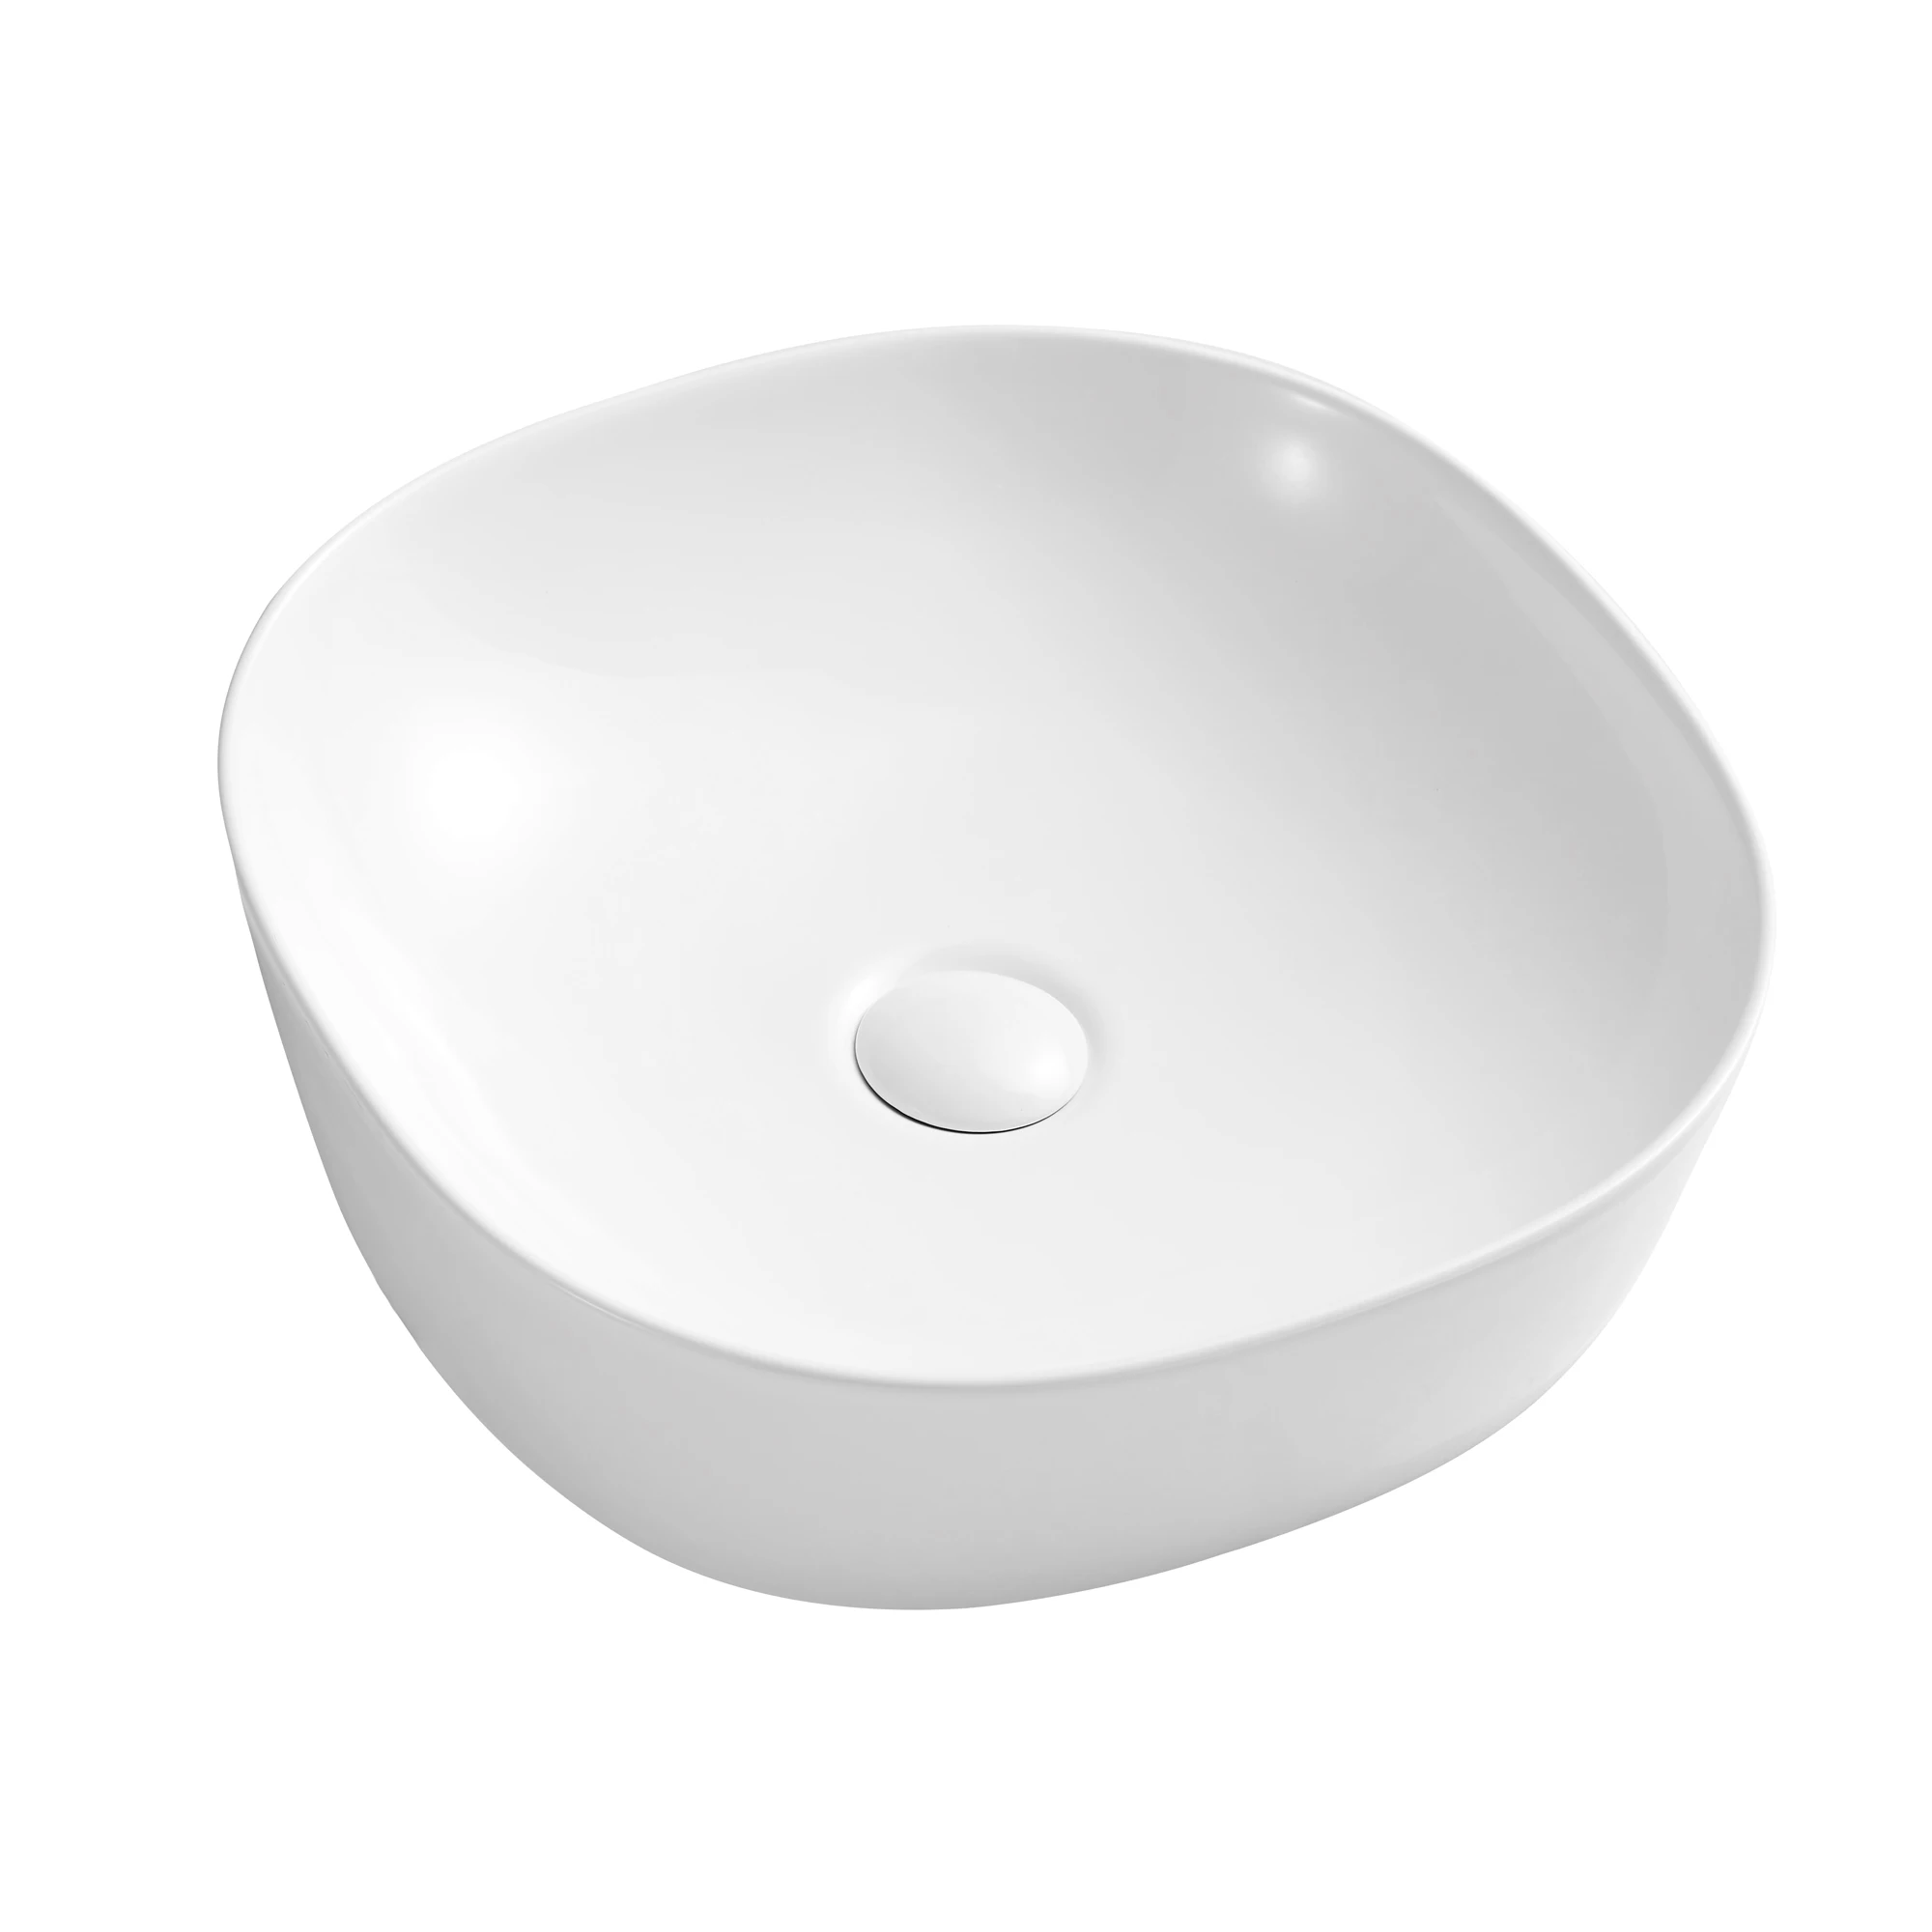 Ceramic Round Sink Above Counter White Bathroom Vanity Sink Bathroom Sink Art Basin Buy Bathroom Vessel Sinks